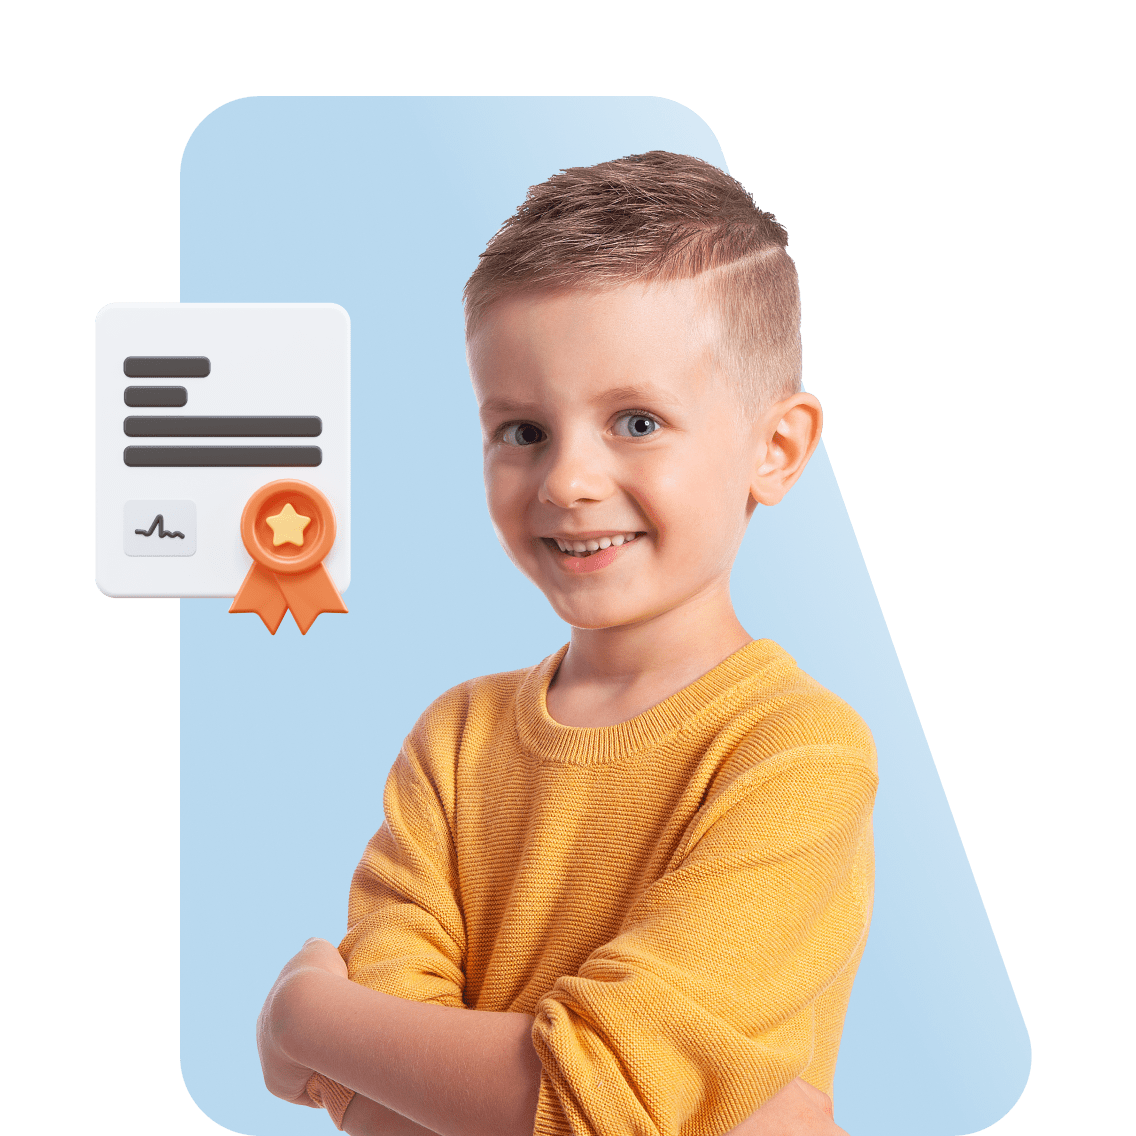 Online Homeschool in California image 1 (name 1 Young Boy Yellow Shirt Certificate 1)